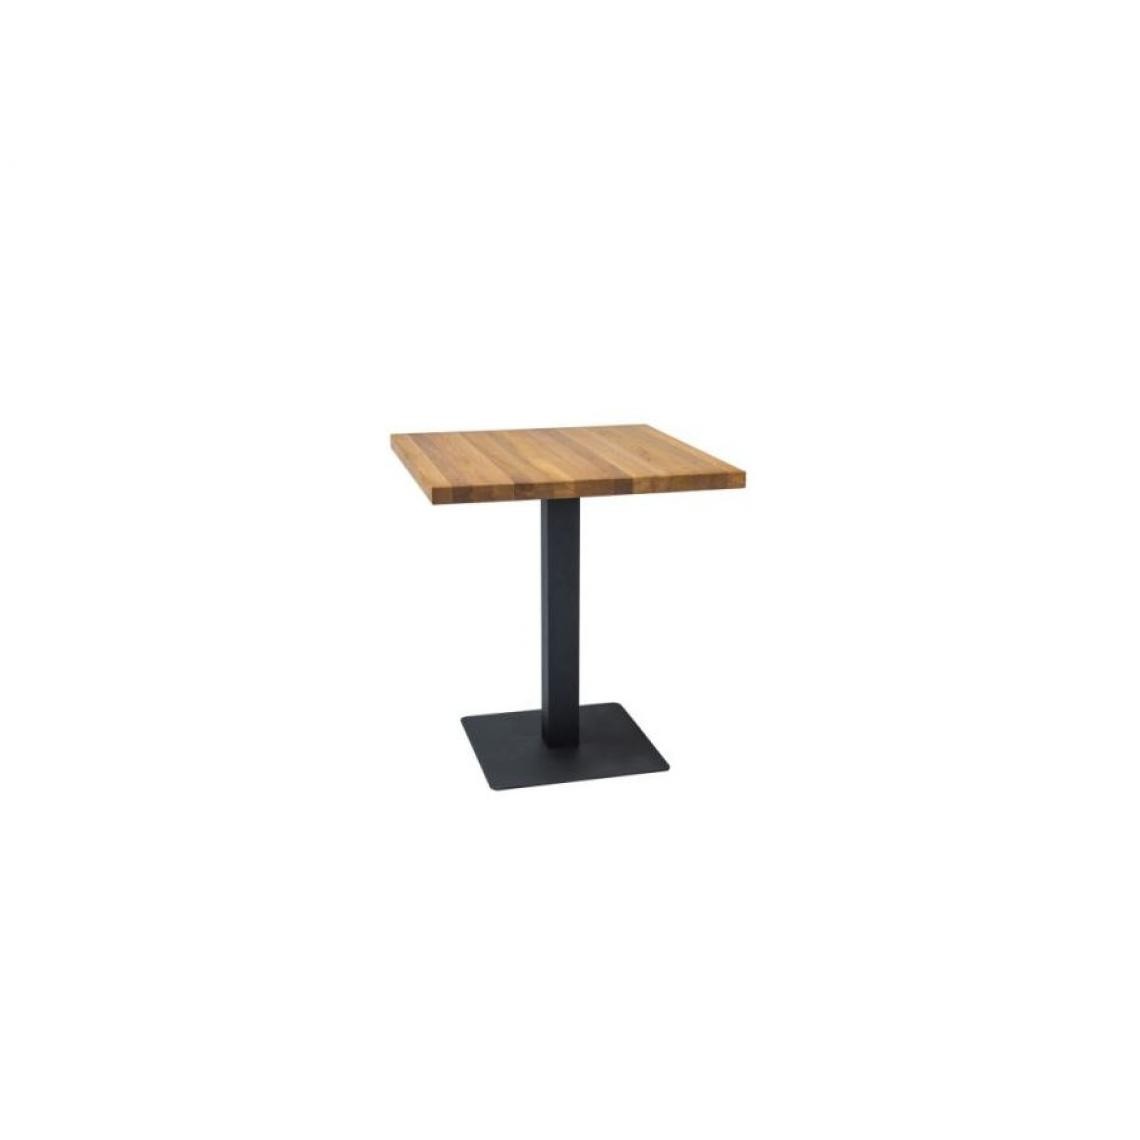 Hucoco - PUSO - Table de style loft avec un piètement en métal - 60x60x76 cm - Plateau carré en bois - Table fixe - Chêne - Tables à manger